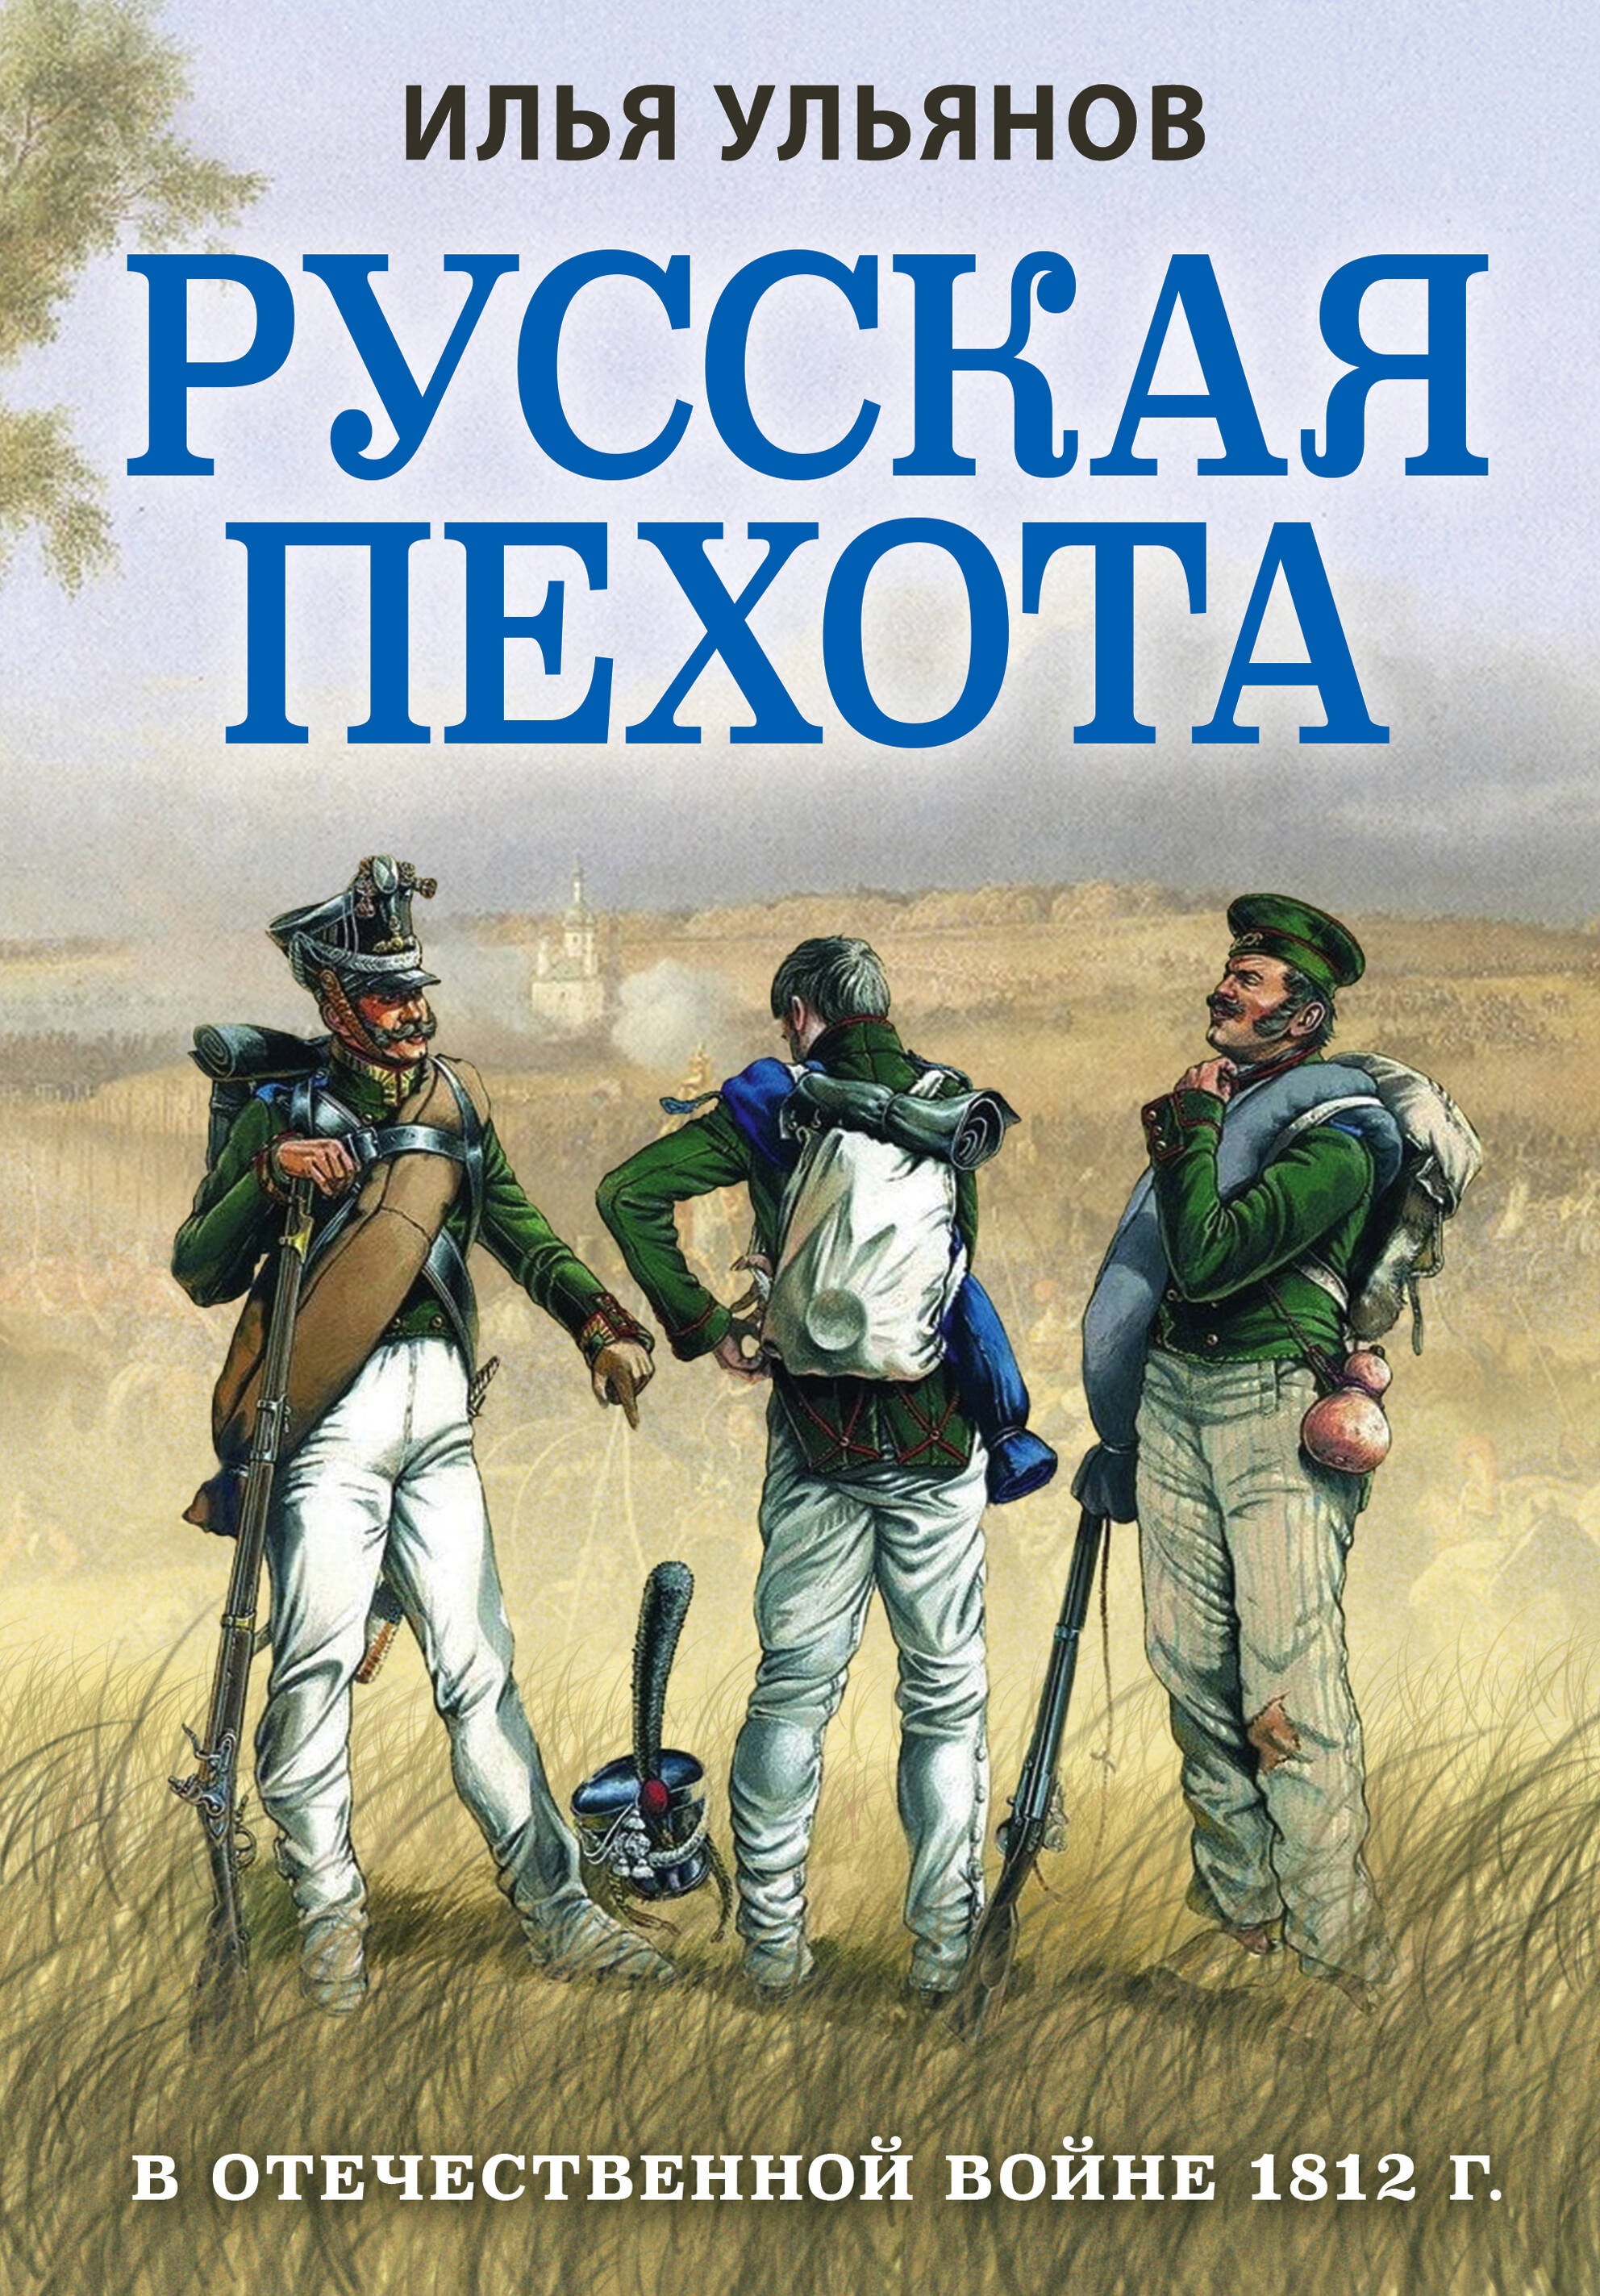 Ульянов Илья Эрнстович - Русская пехота в Отечественной войне 1812 года